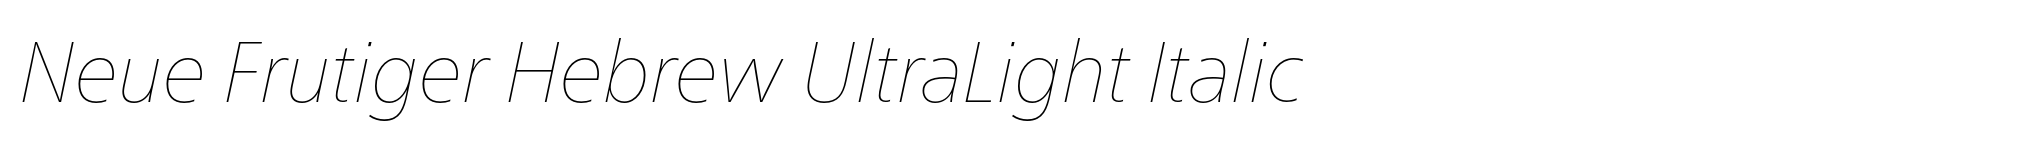 Neue Frutiger Hebrew UltraLight Italic image